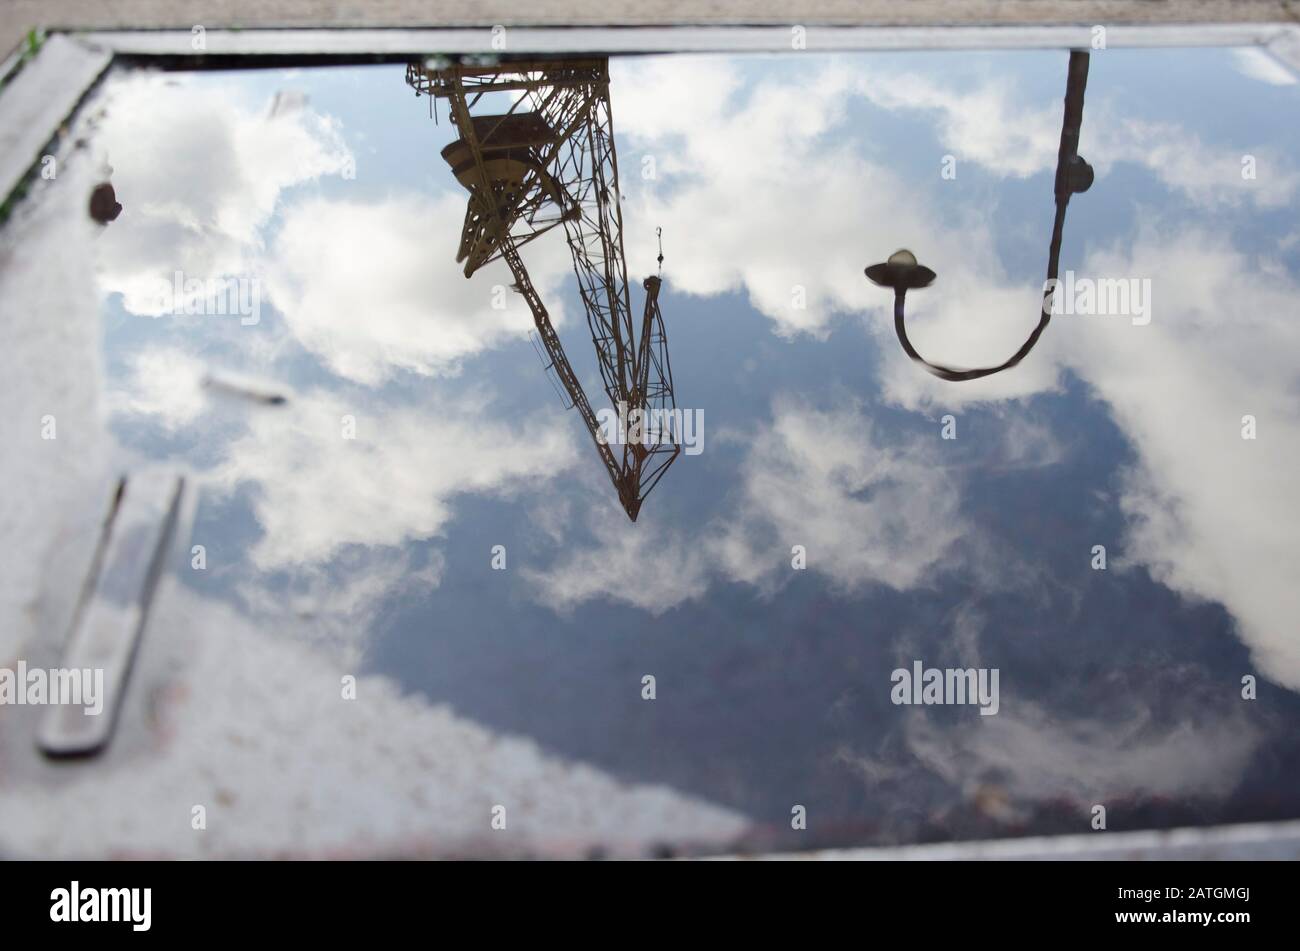 Riflessione urbana: Un palo di illuminazione, una gru e un cielo con nuvole riflesse sulla superficie dell'acqua in un pozza, a Puerto Madero, Buenos Aires, Ar Foto Stock